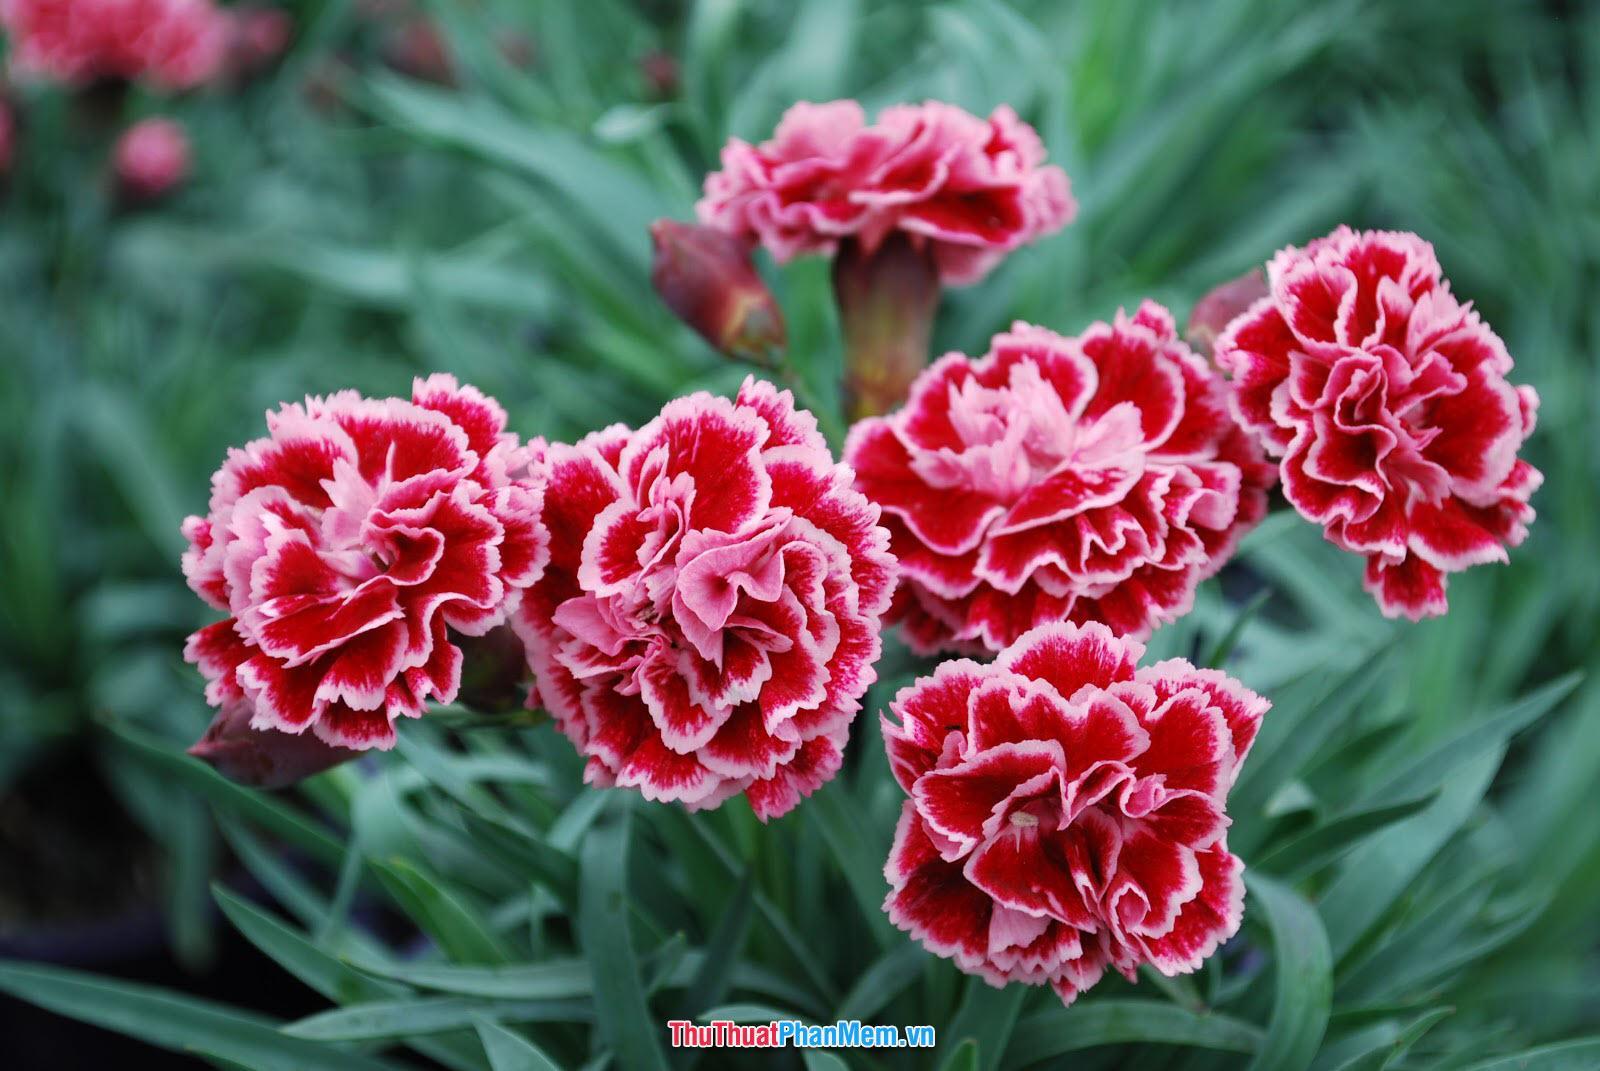 Hoa cẩm chướng xinh đẹp tặng vợ và người yêu nhân ngày mùng 8 tháng 3